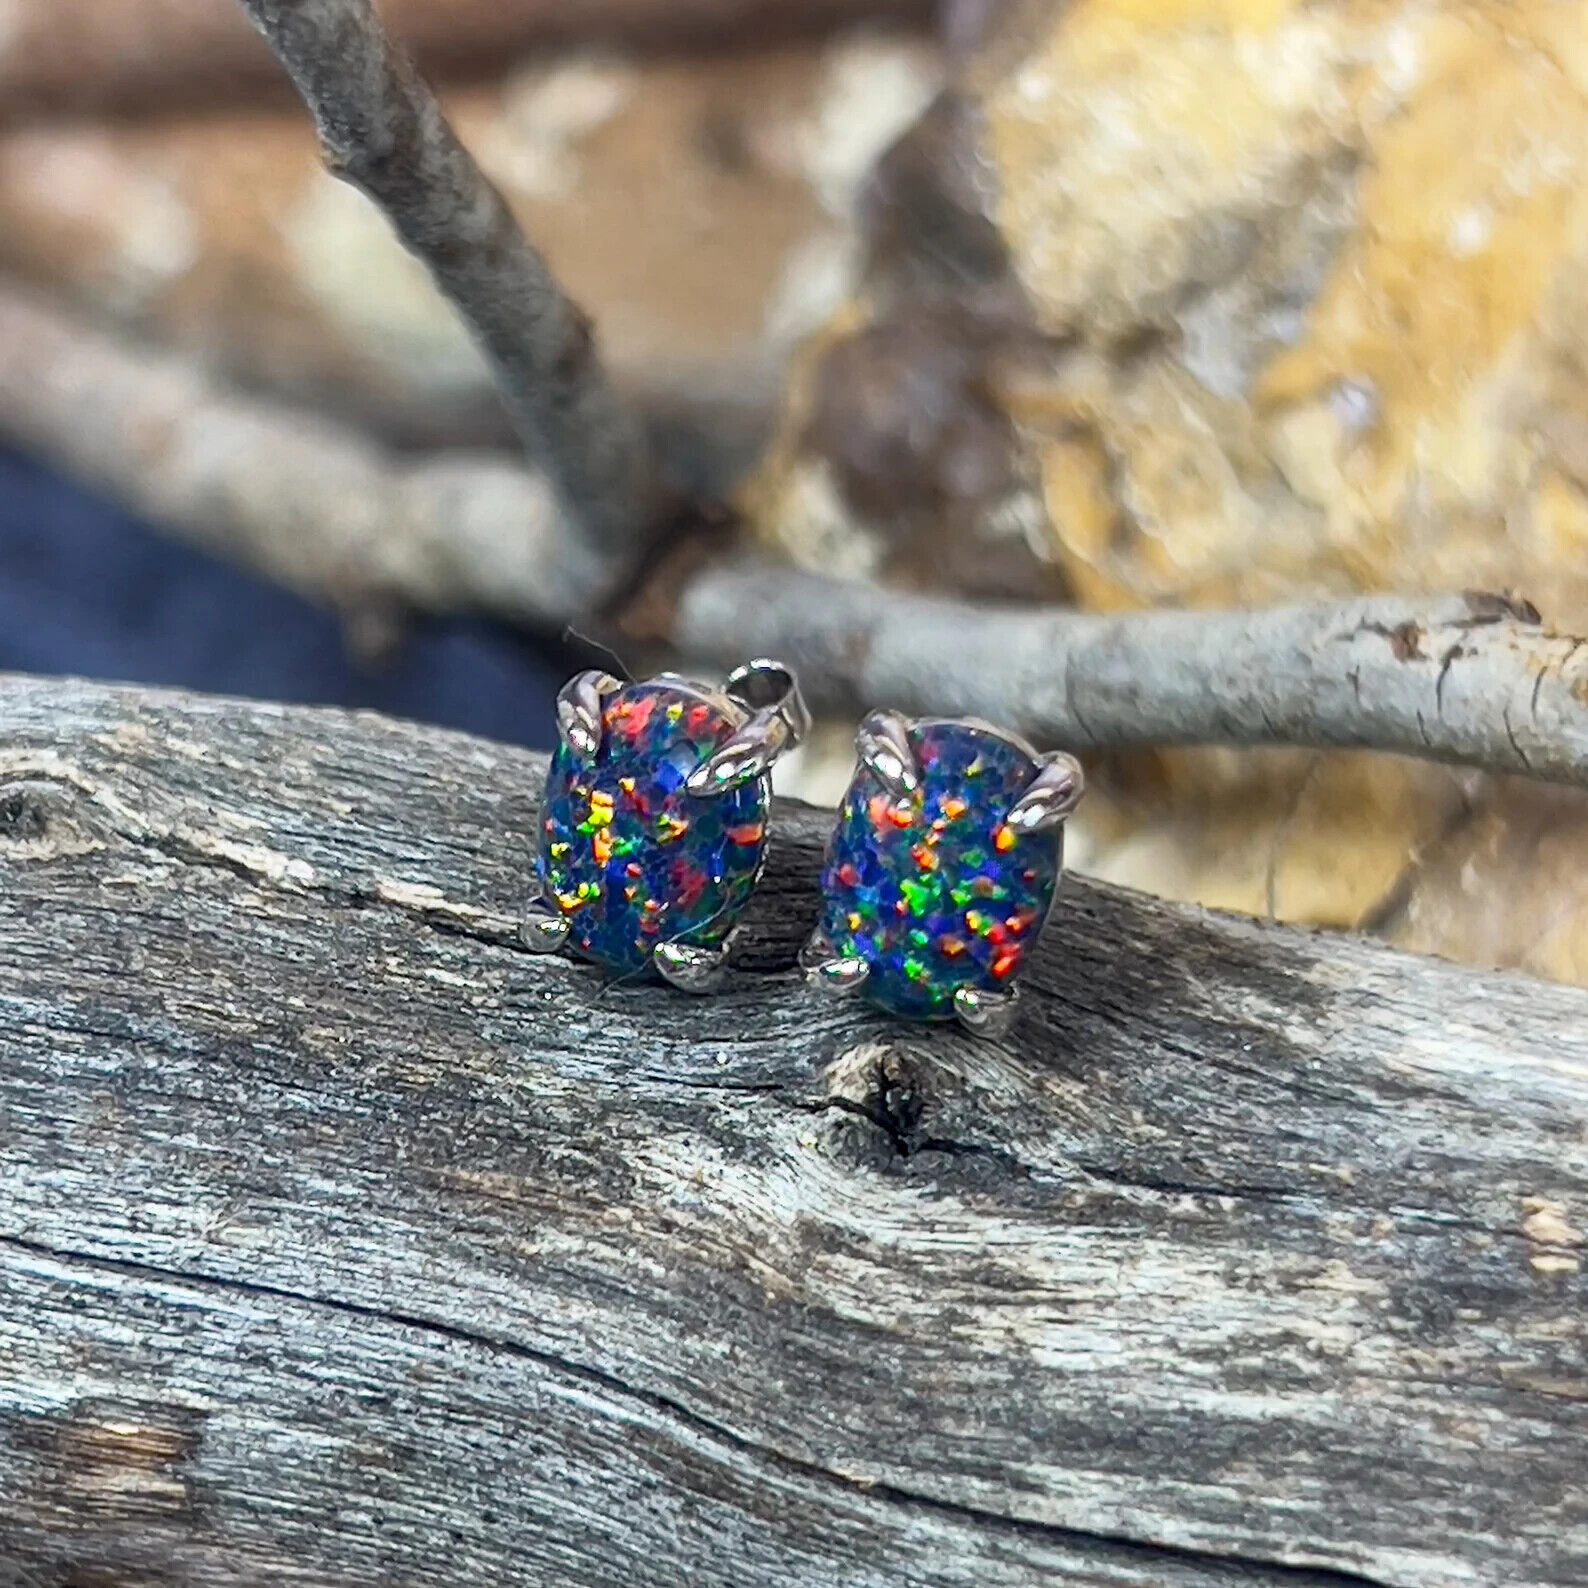 Black Opal Earrings - Solid Sterling Silver Handcrafted Jewelry studs Earrings